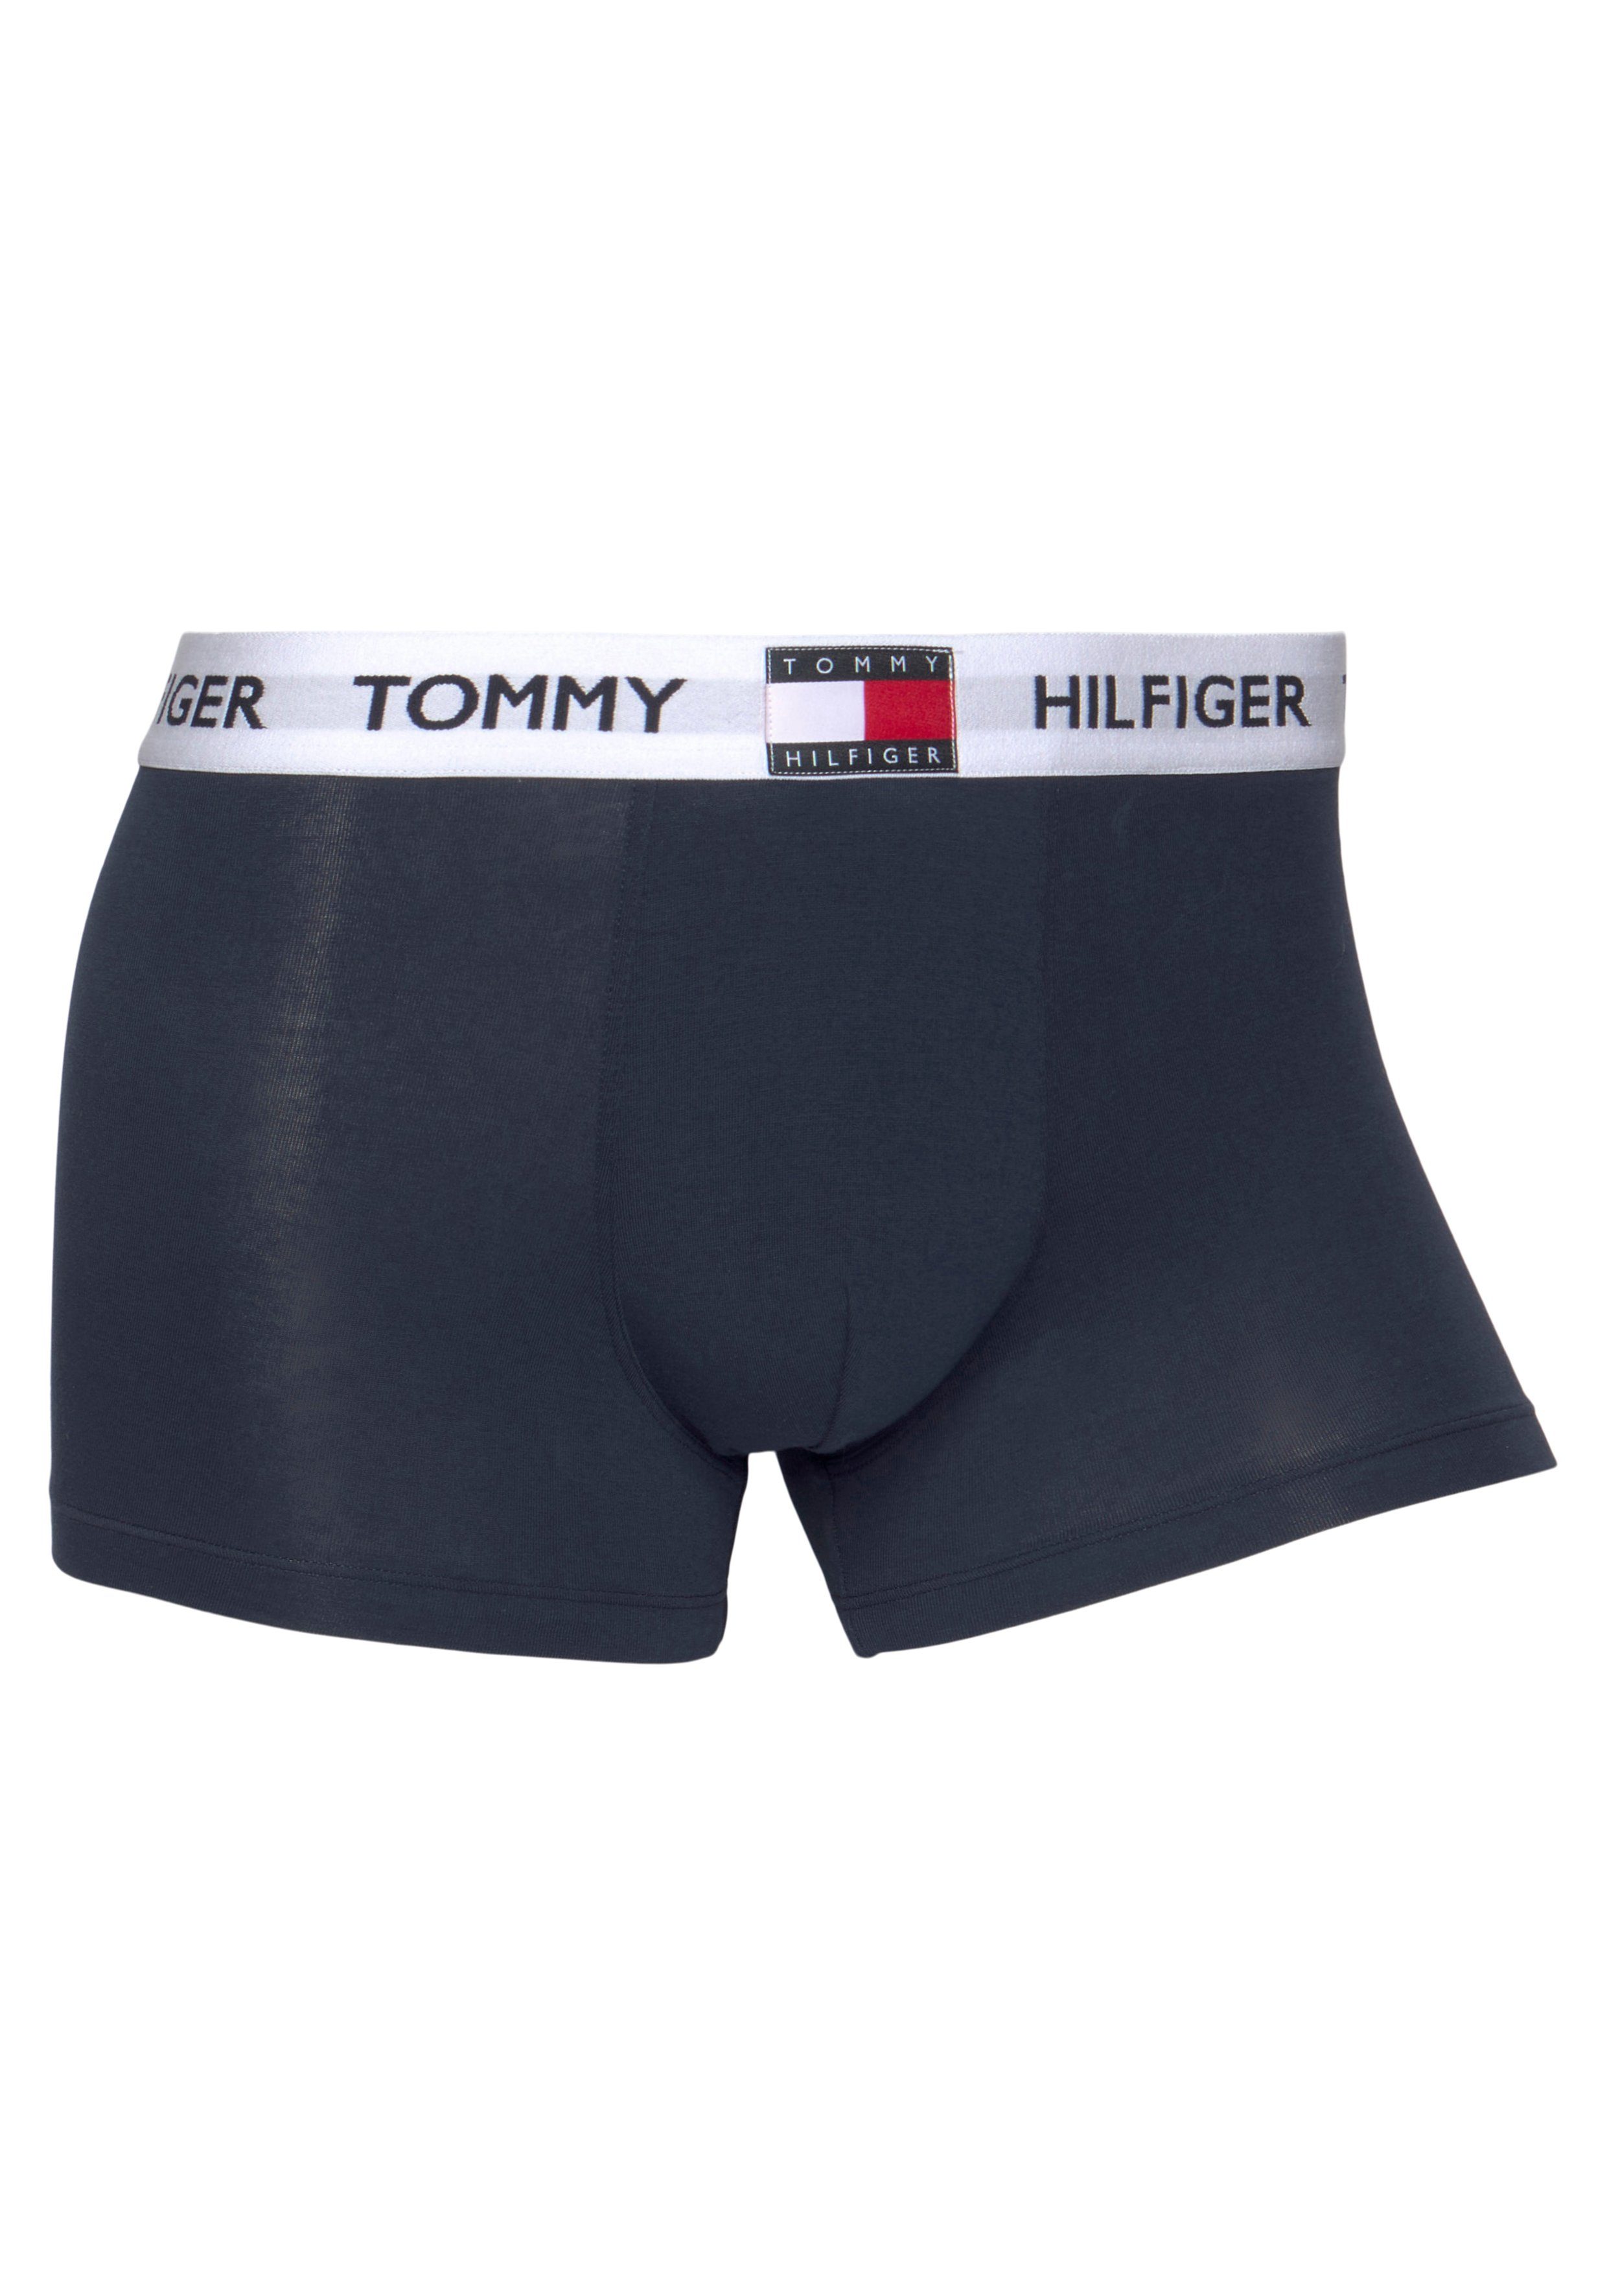 NAVY BLAZER Hilfiger Tommy Hilfiger Tommy mit Underwear TRUNK Logo-Elastiktape Trunk